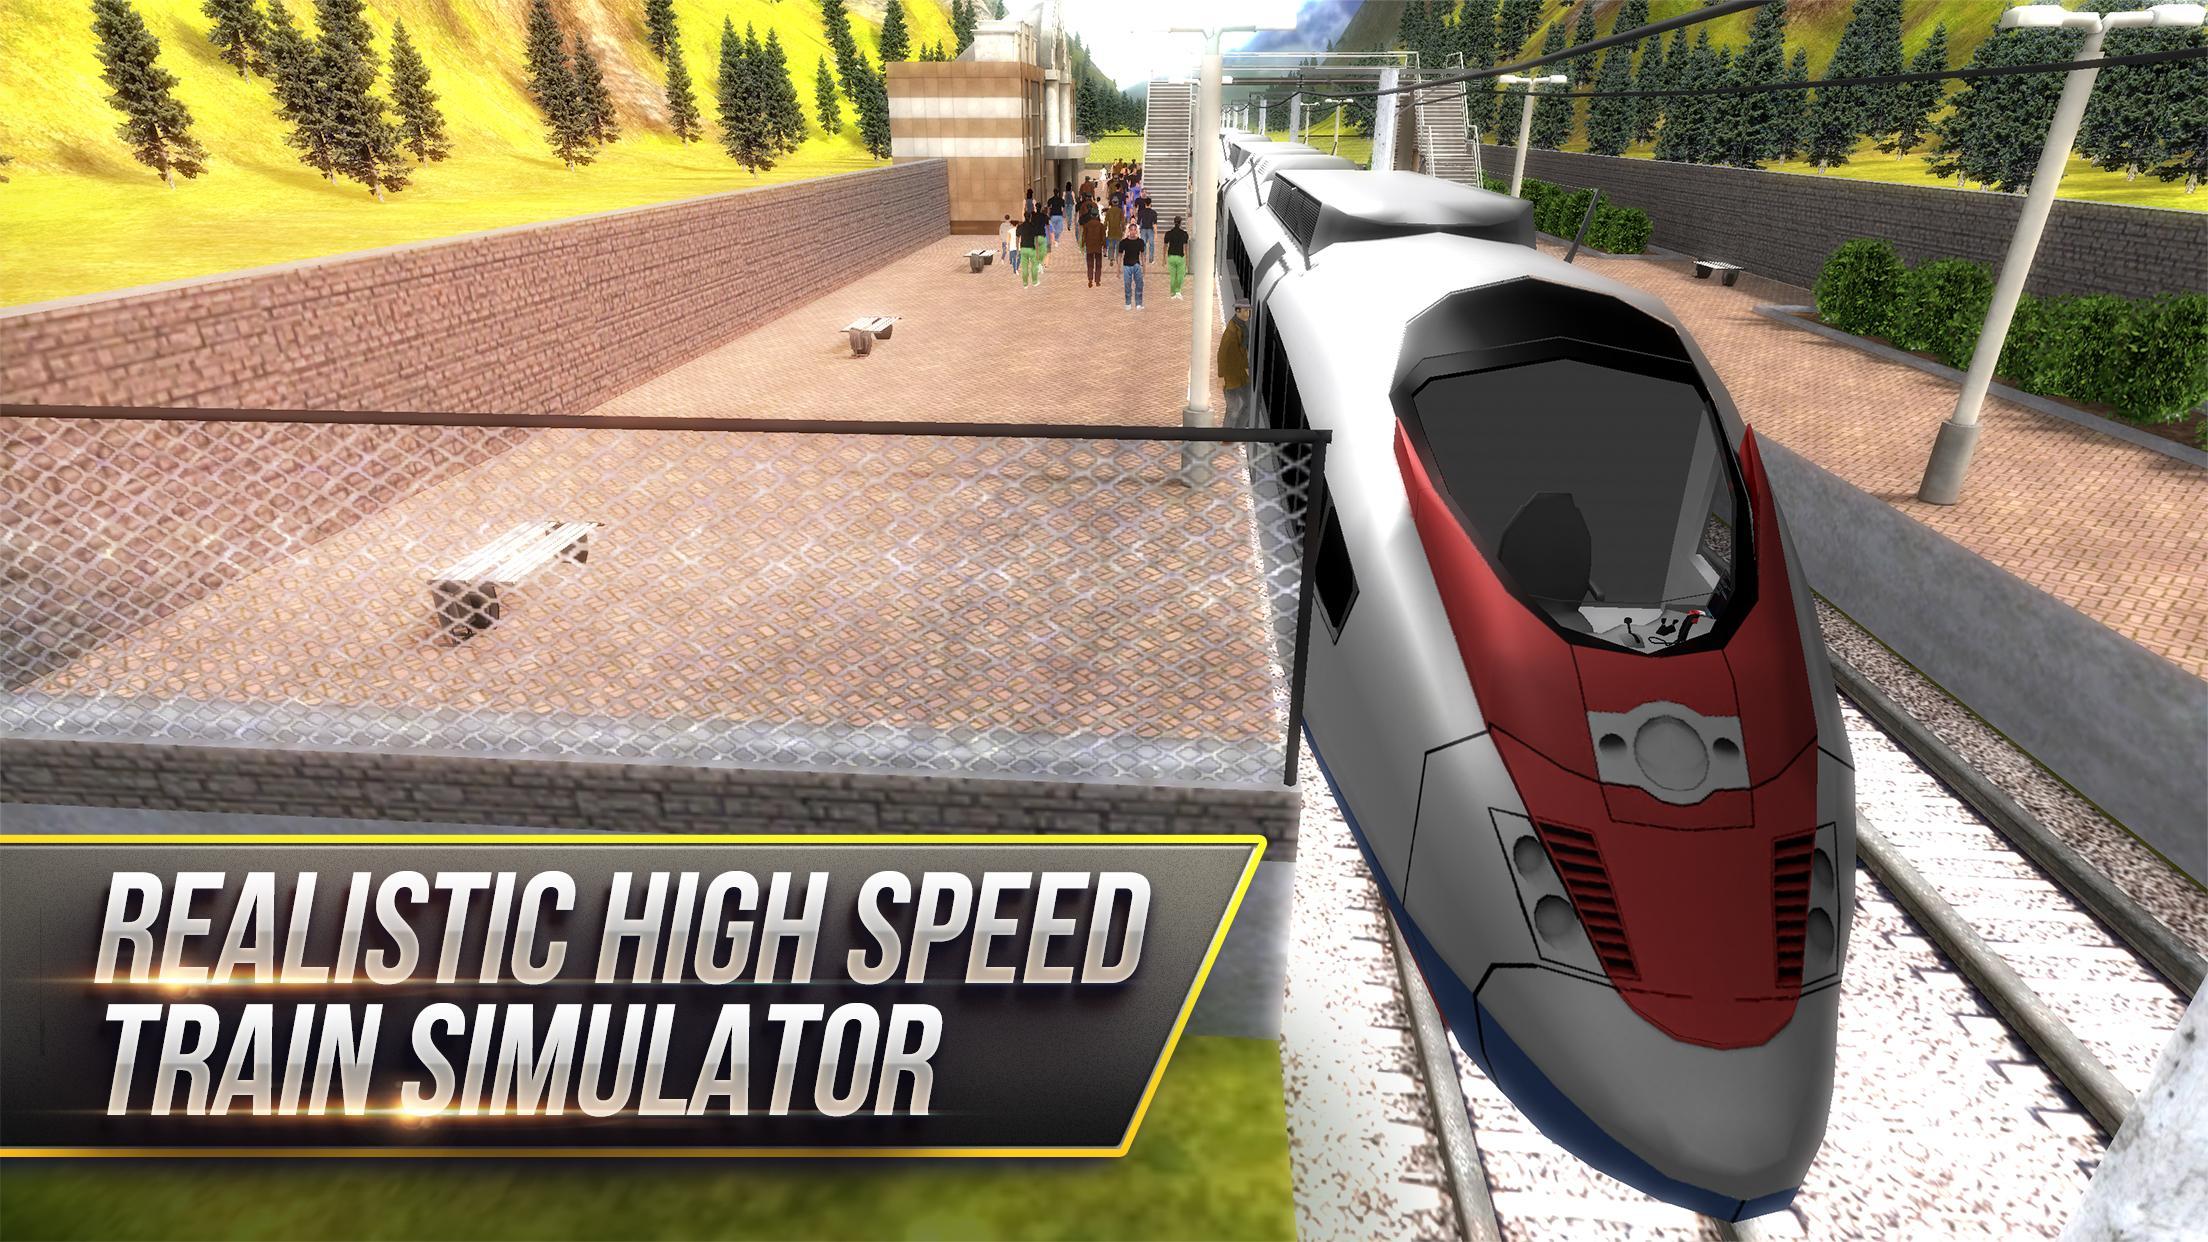 Игра 5 поезд. High Speed Trains игра. Скоростные поезда симулятор. Поезд Сапсан игра. Реалистичные игры про поезда.